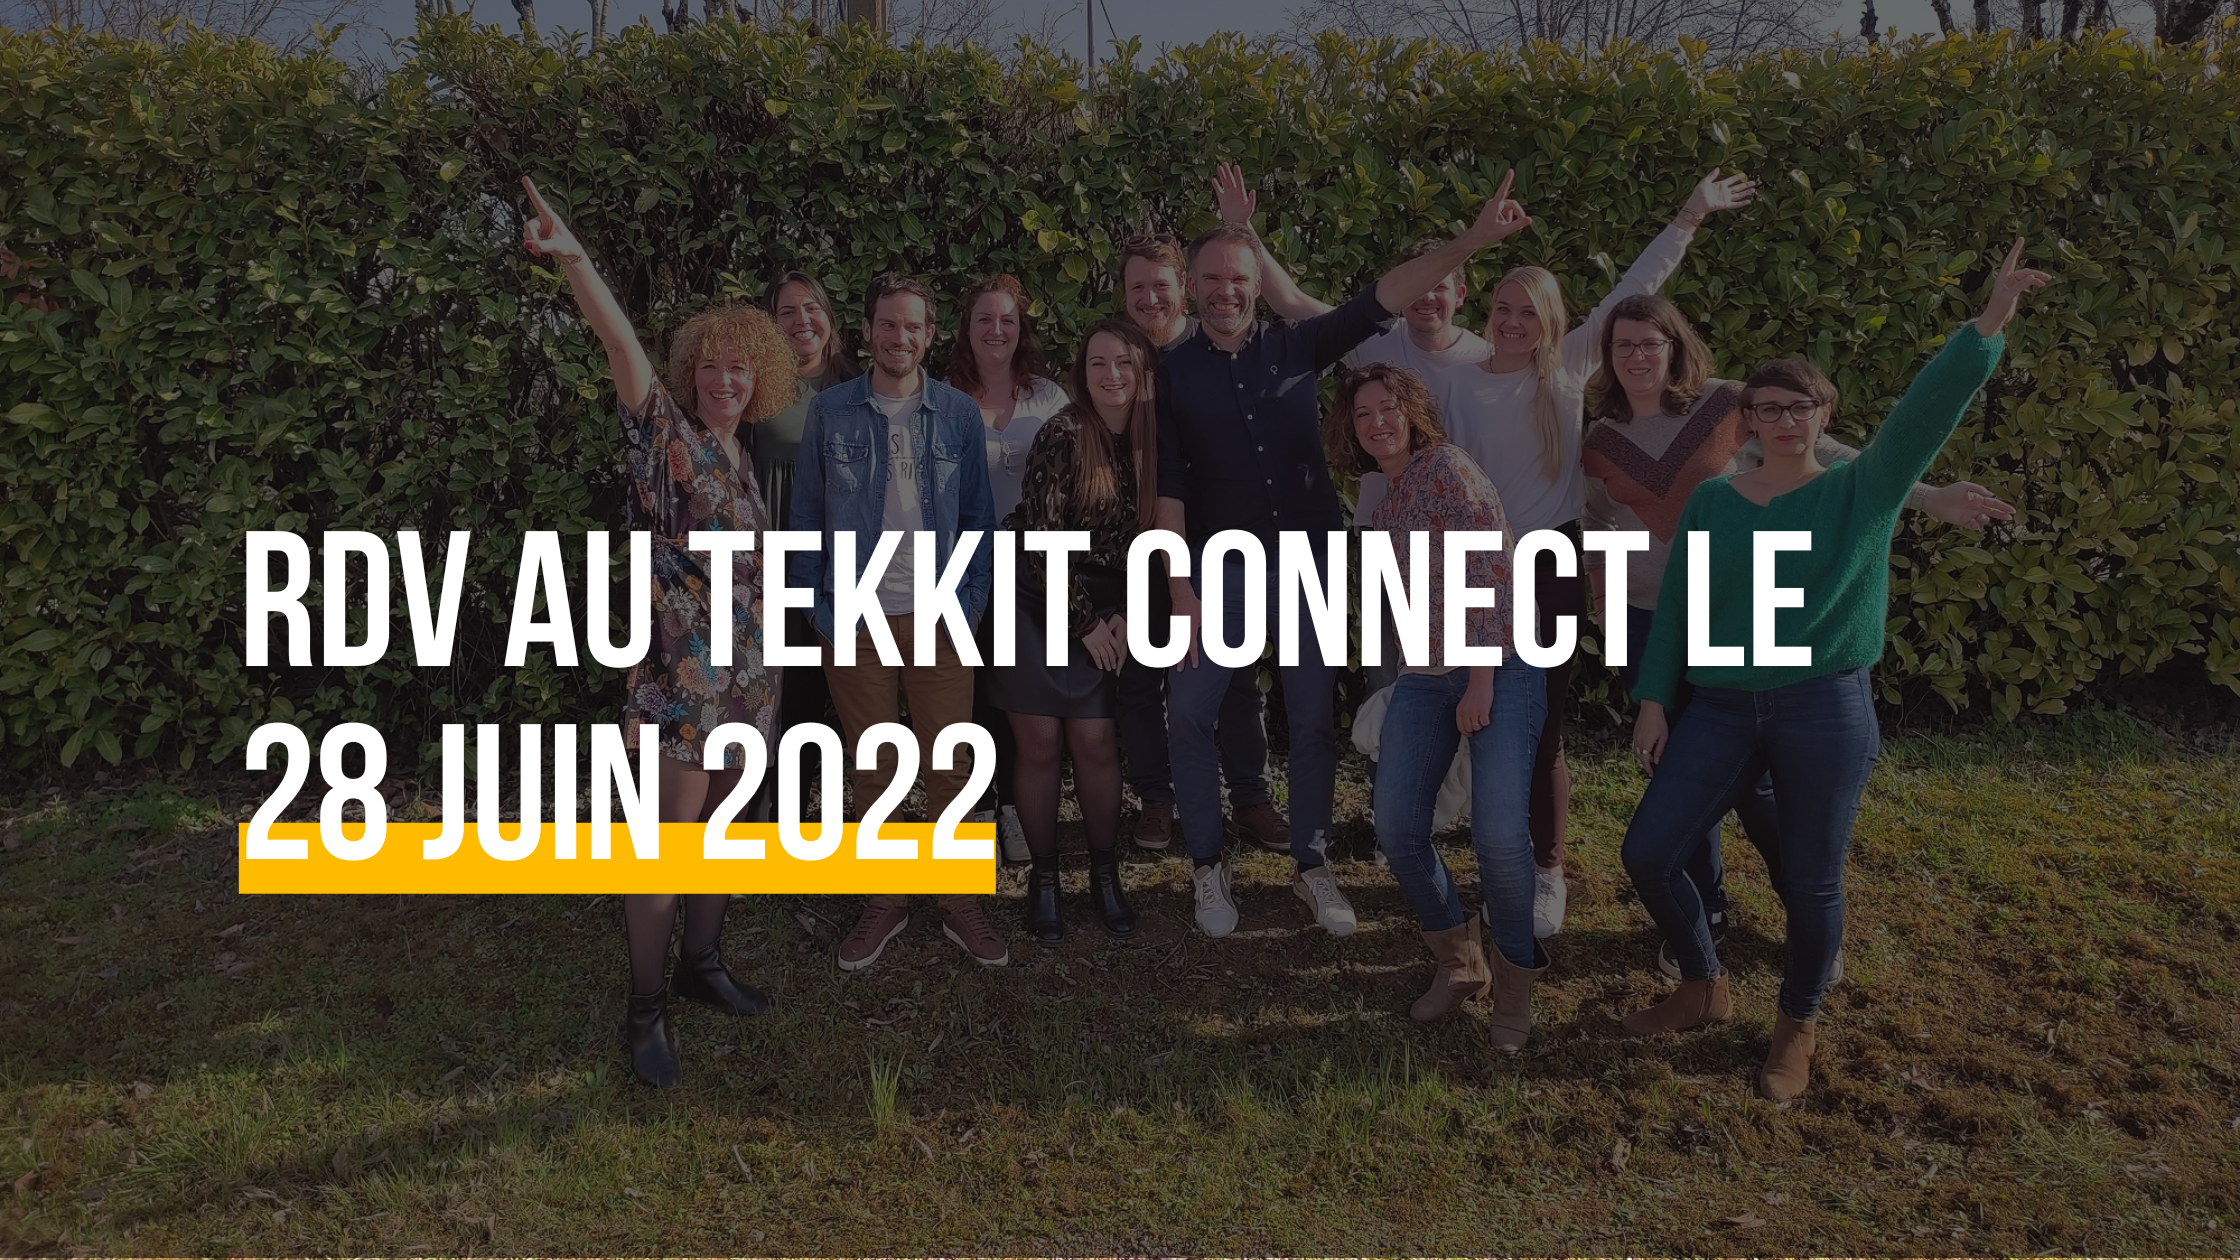 Wekey participe au Tekkit Connect de Bordeaux !